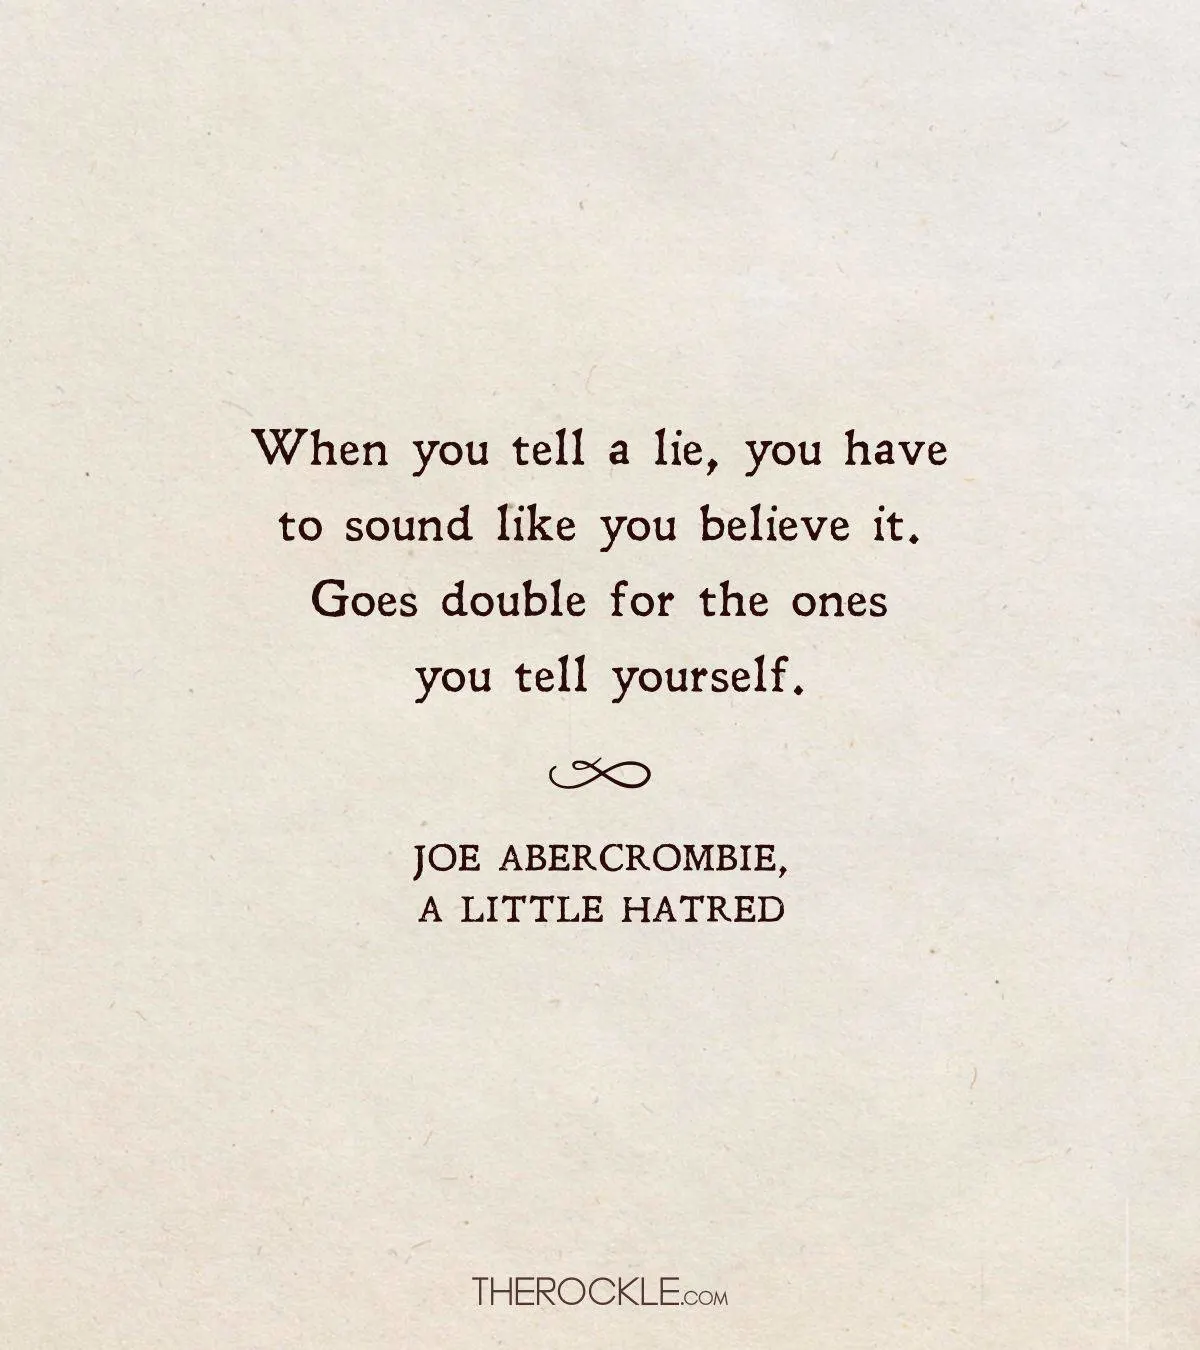 Joe Abercrombie quote on lies